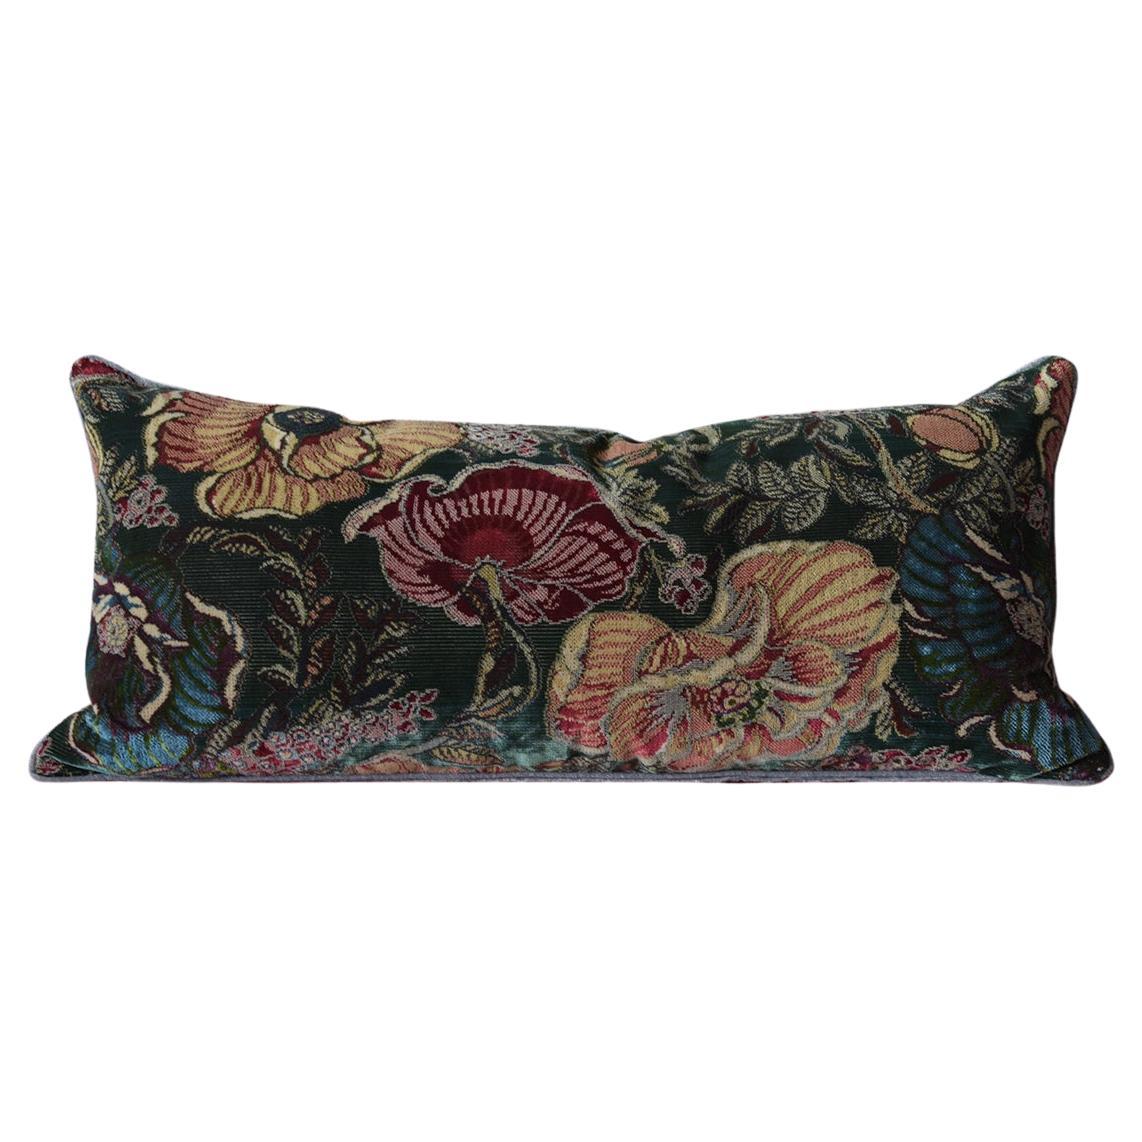 1910s Vintage Botanical Velvet Pillows: Charm & Comfort for Any Home For Sale